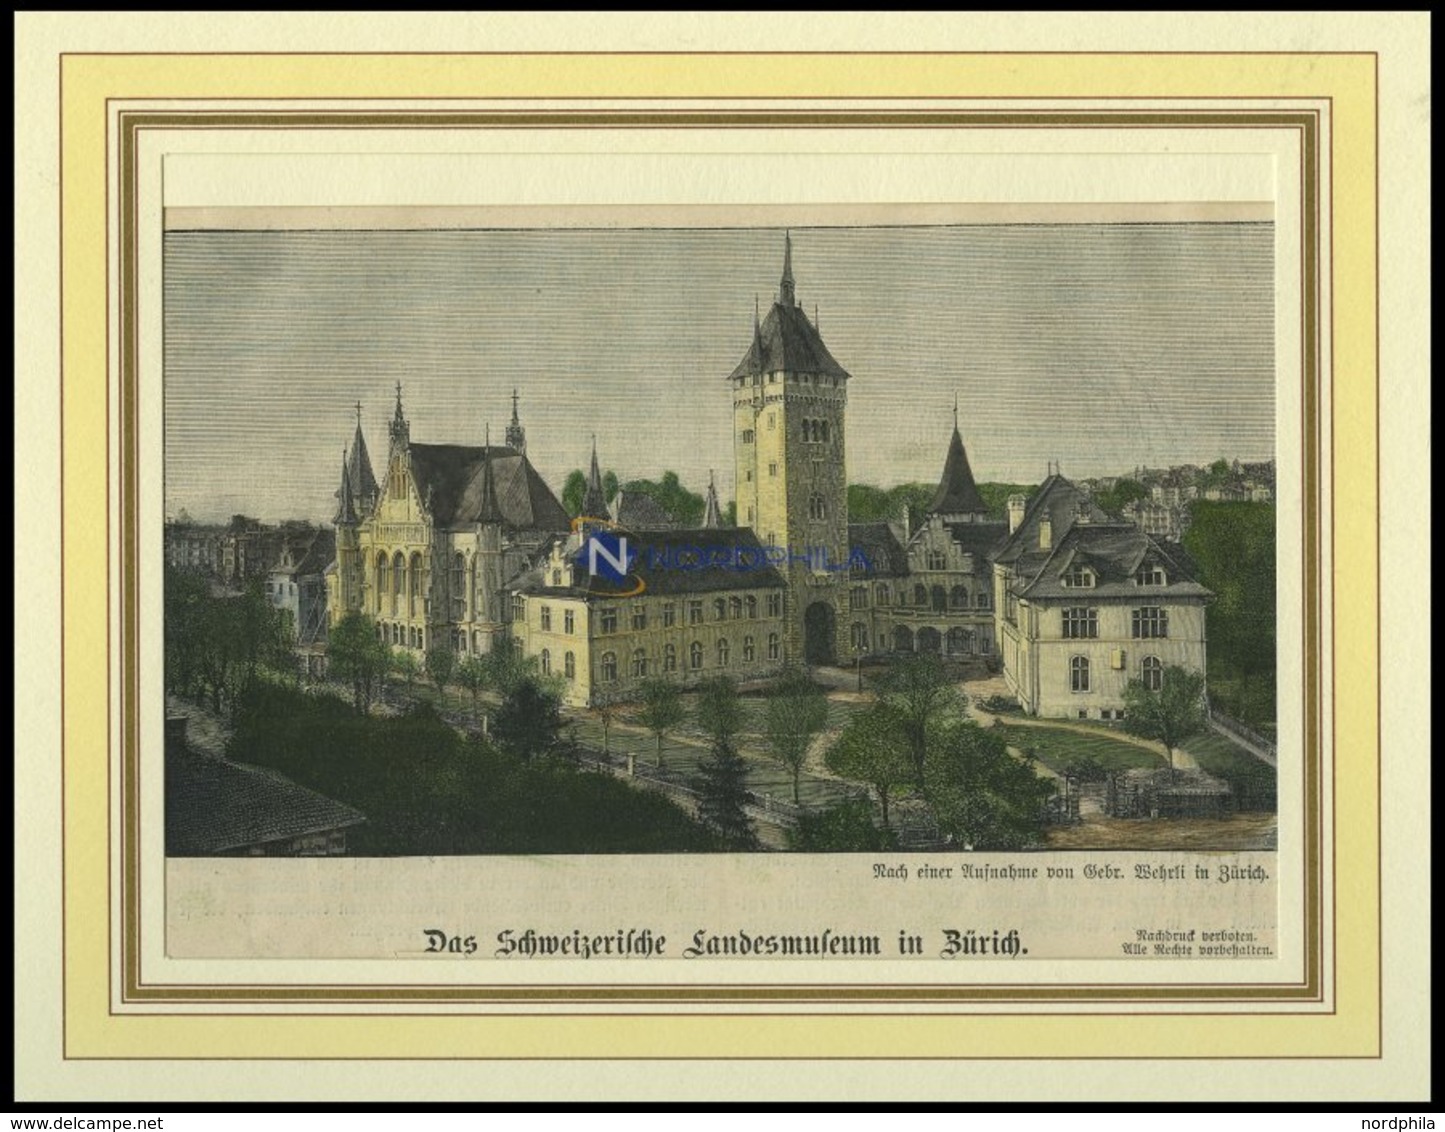 ZÜRICH: Das Landesmuseum, Kolorierter Holzstich Von 1898 - Litografia